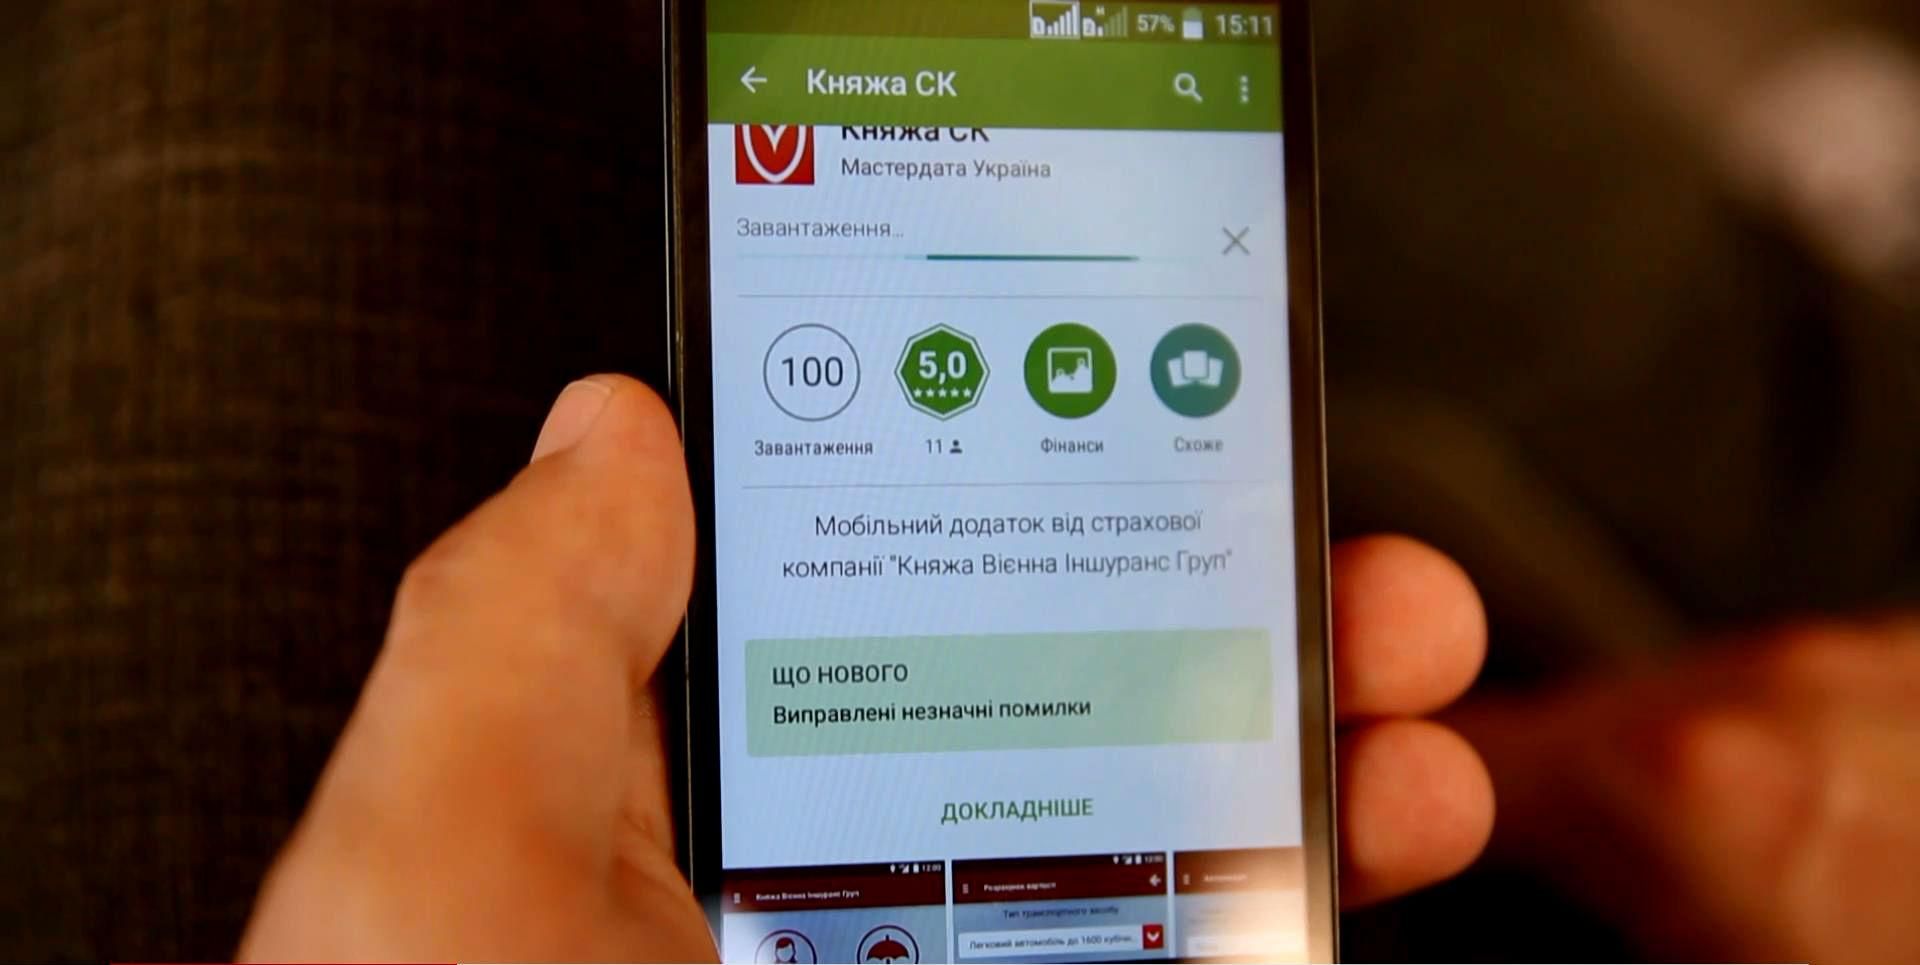 СК "Княжа" презентовала собственное мобильное приложение